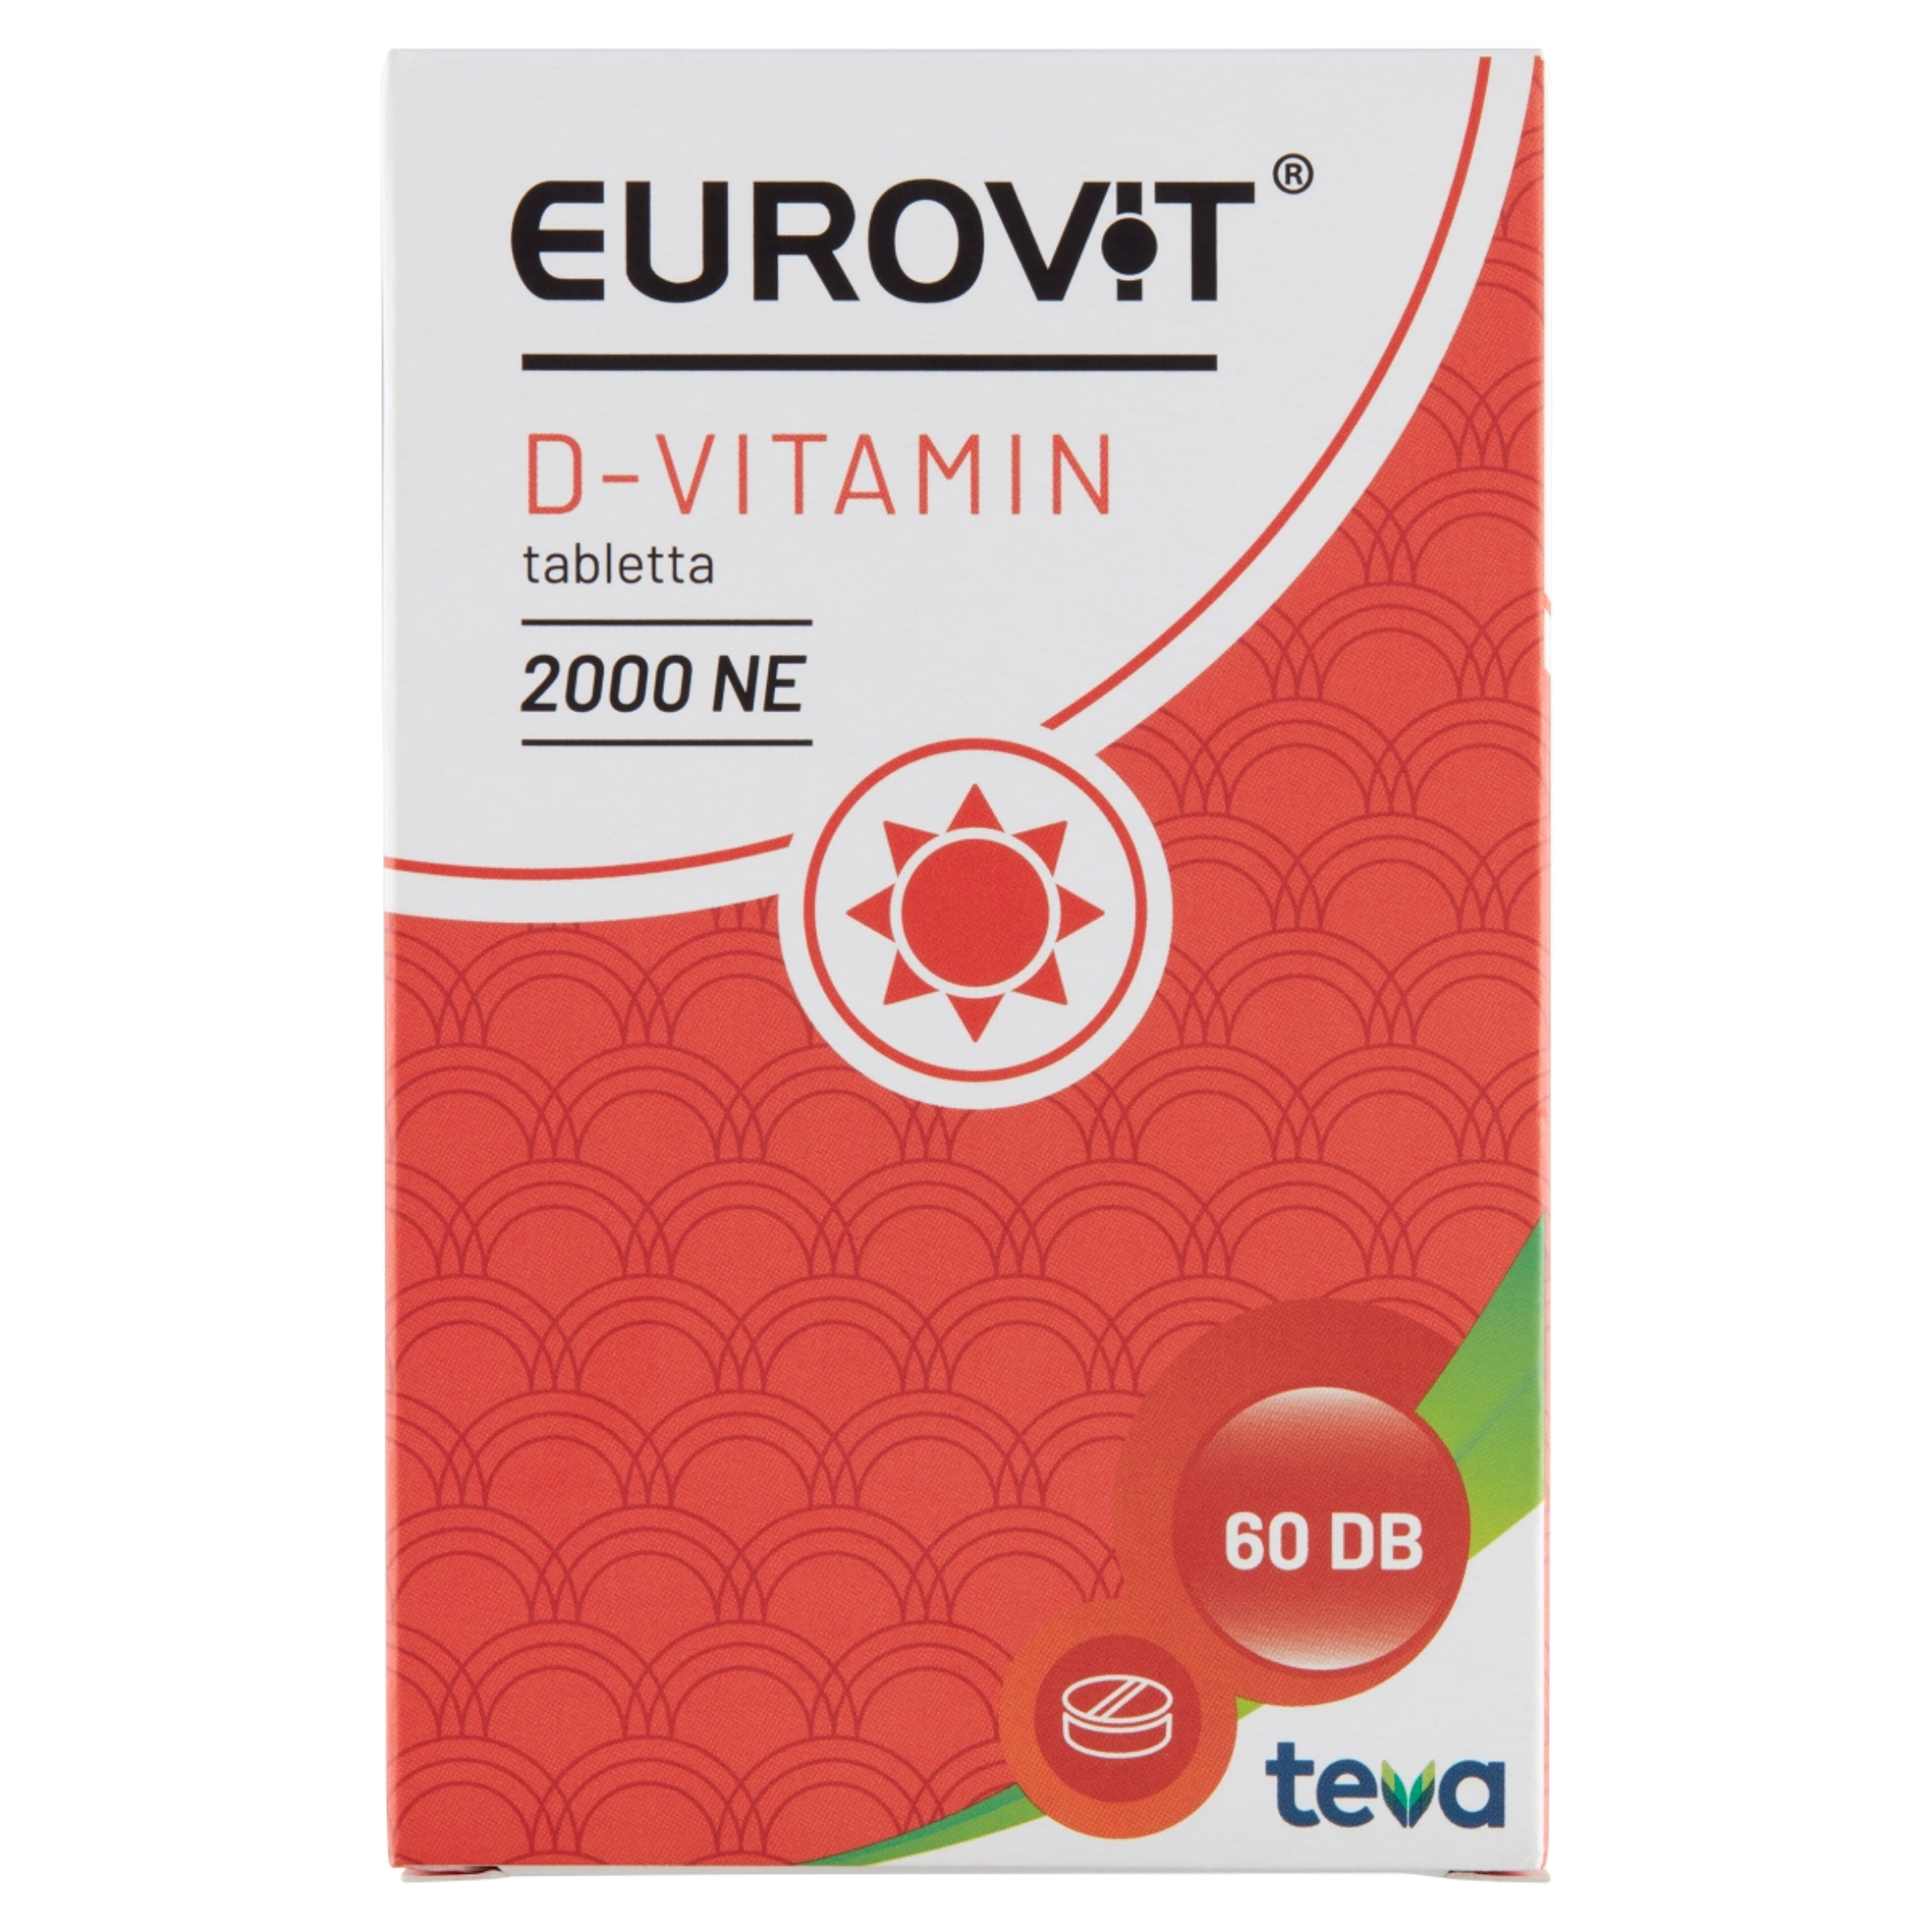 Eurovit d-vitamin 2000ne tabletta - 60 db-1